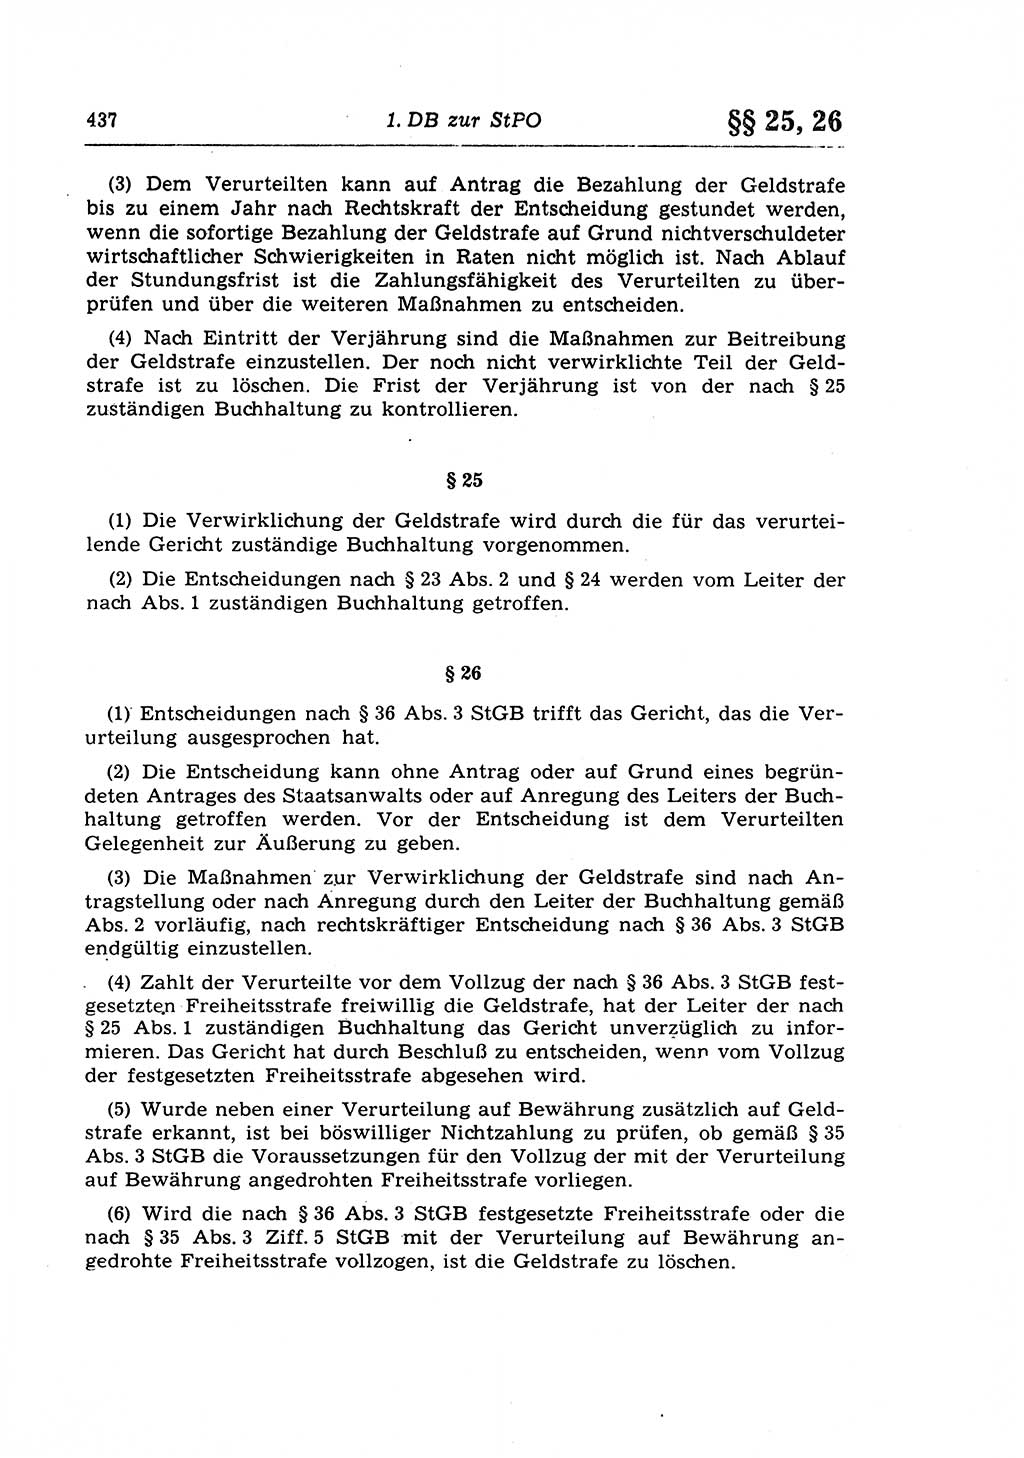 Strafprozeßrecht der DDR (Deutsche Demokratische Republik), Lehrkommentar zur Strafprozeßordnung (StPO) 1968, Seite 437 (Strafprozeßr. DDR Lehrkomm. StPO 19688, S. 437)